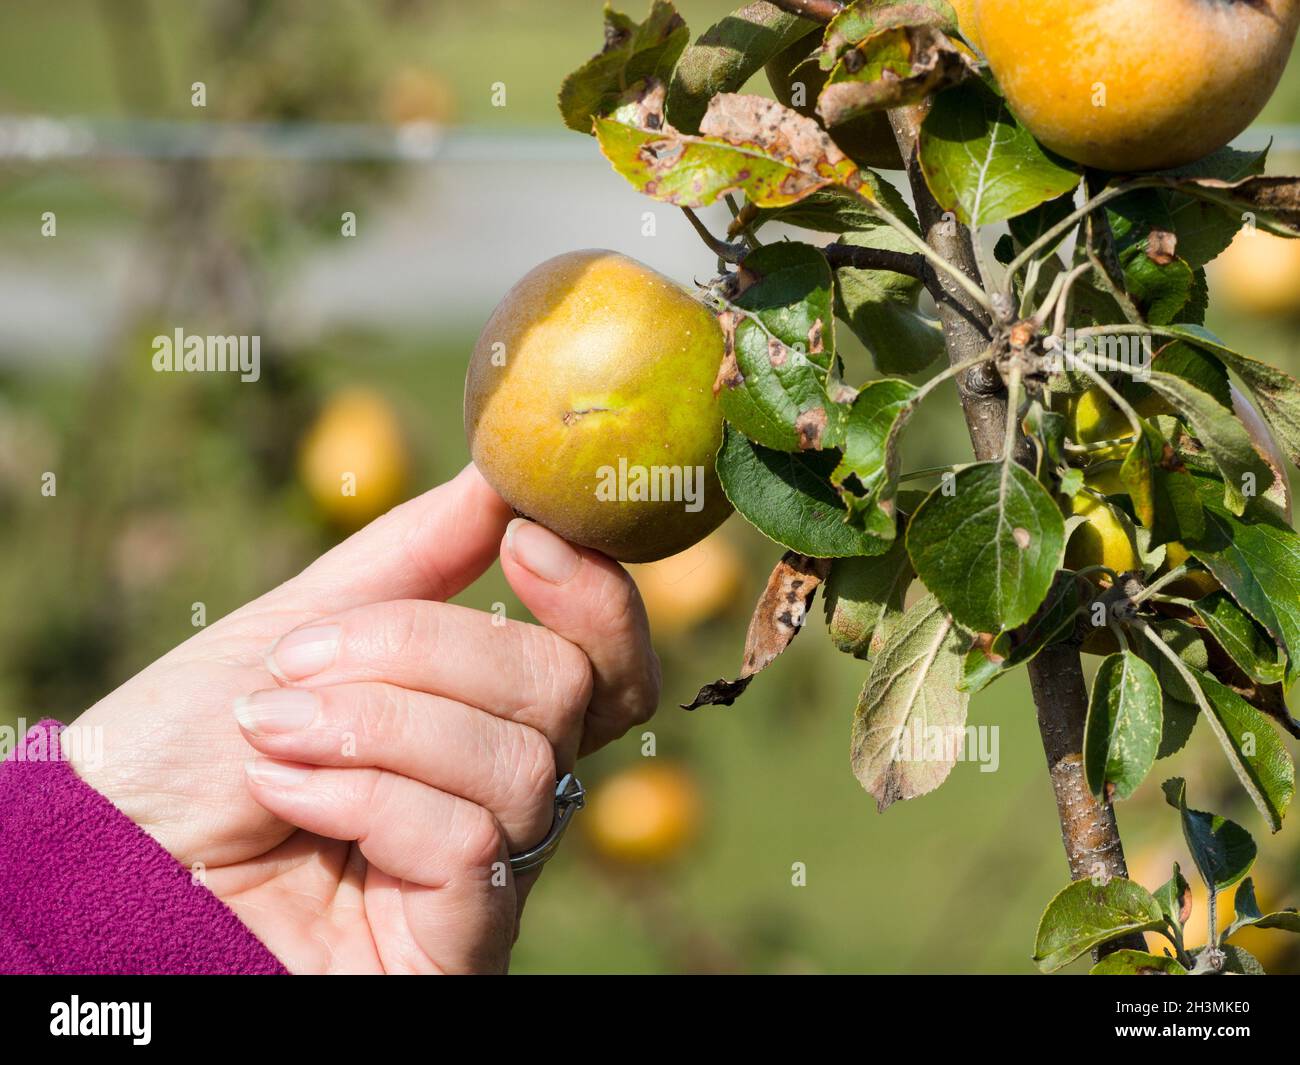 Recogiendo una manzana russet madura pero manchada: Una mujer alcanza para una manzana russet ligeramente manchada en una rama del árbol en el sol de la tarde. Foto de stock